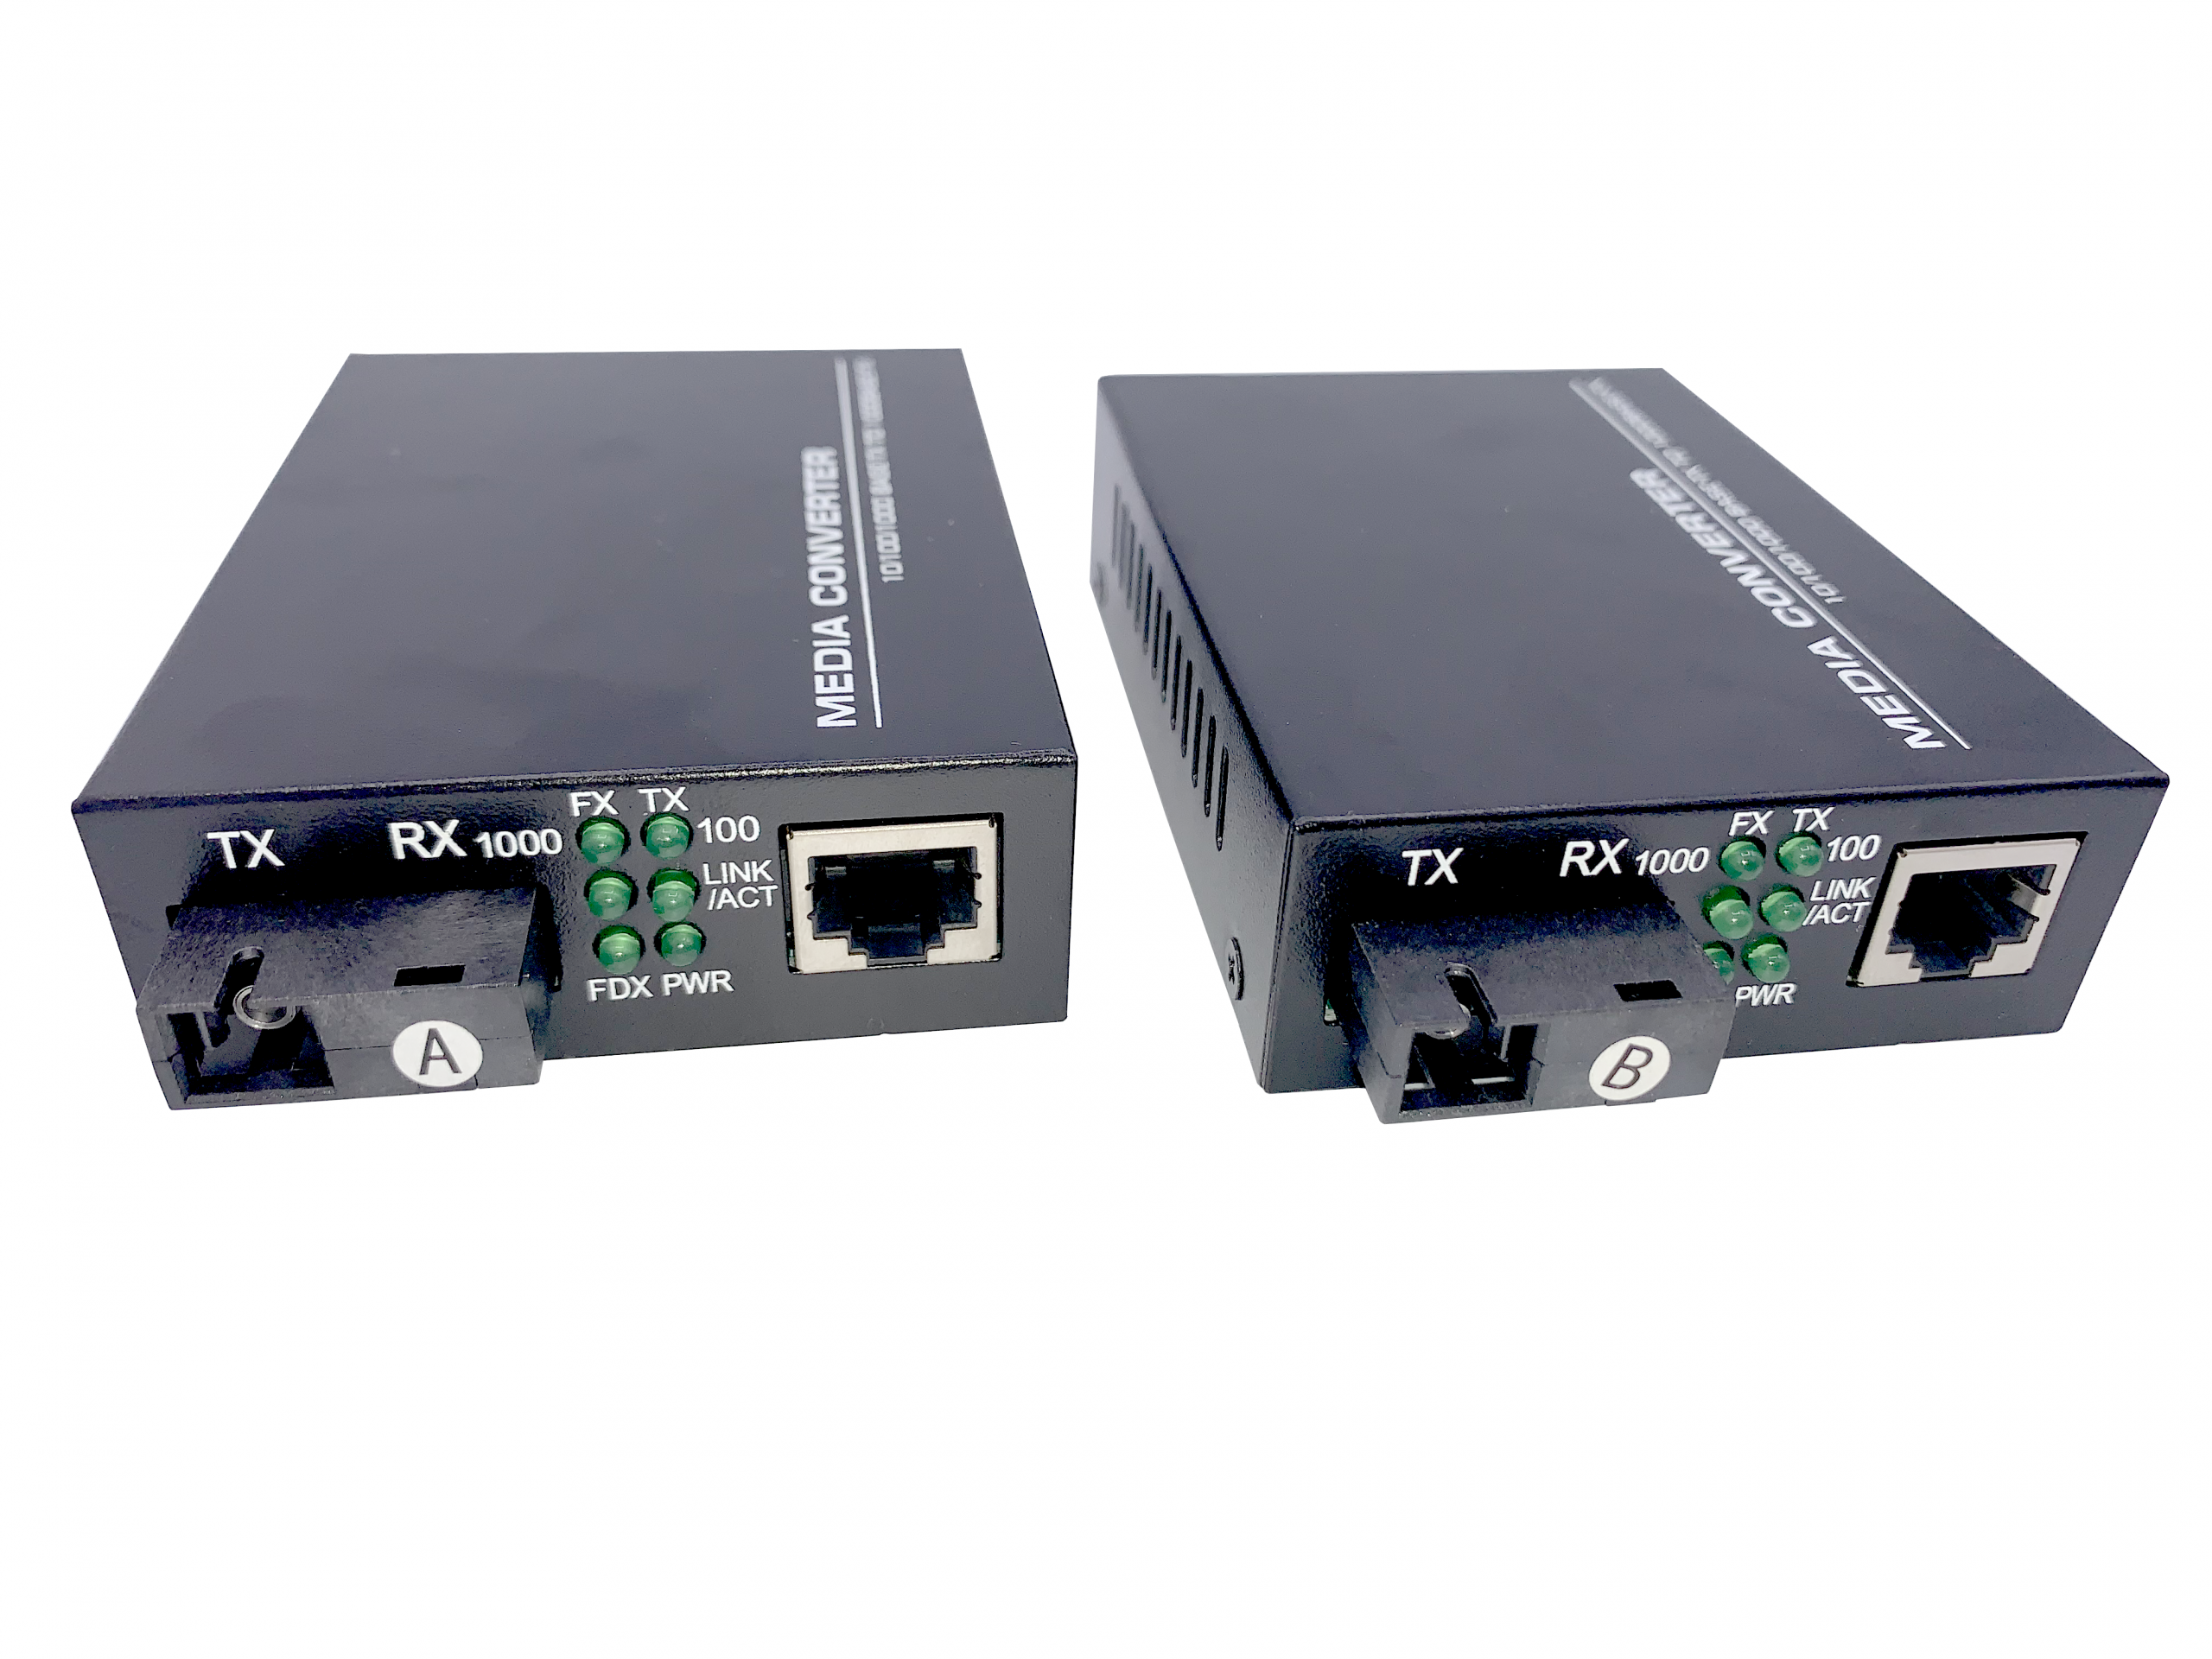 Câble optique actif ACT USB-C (AOC) pour les longues distances